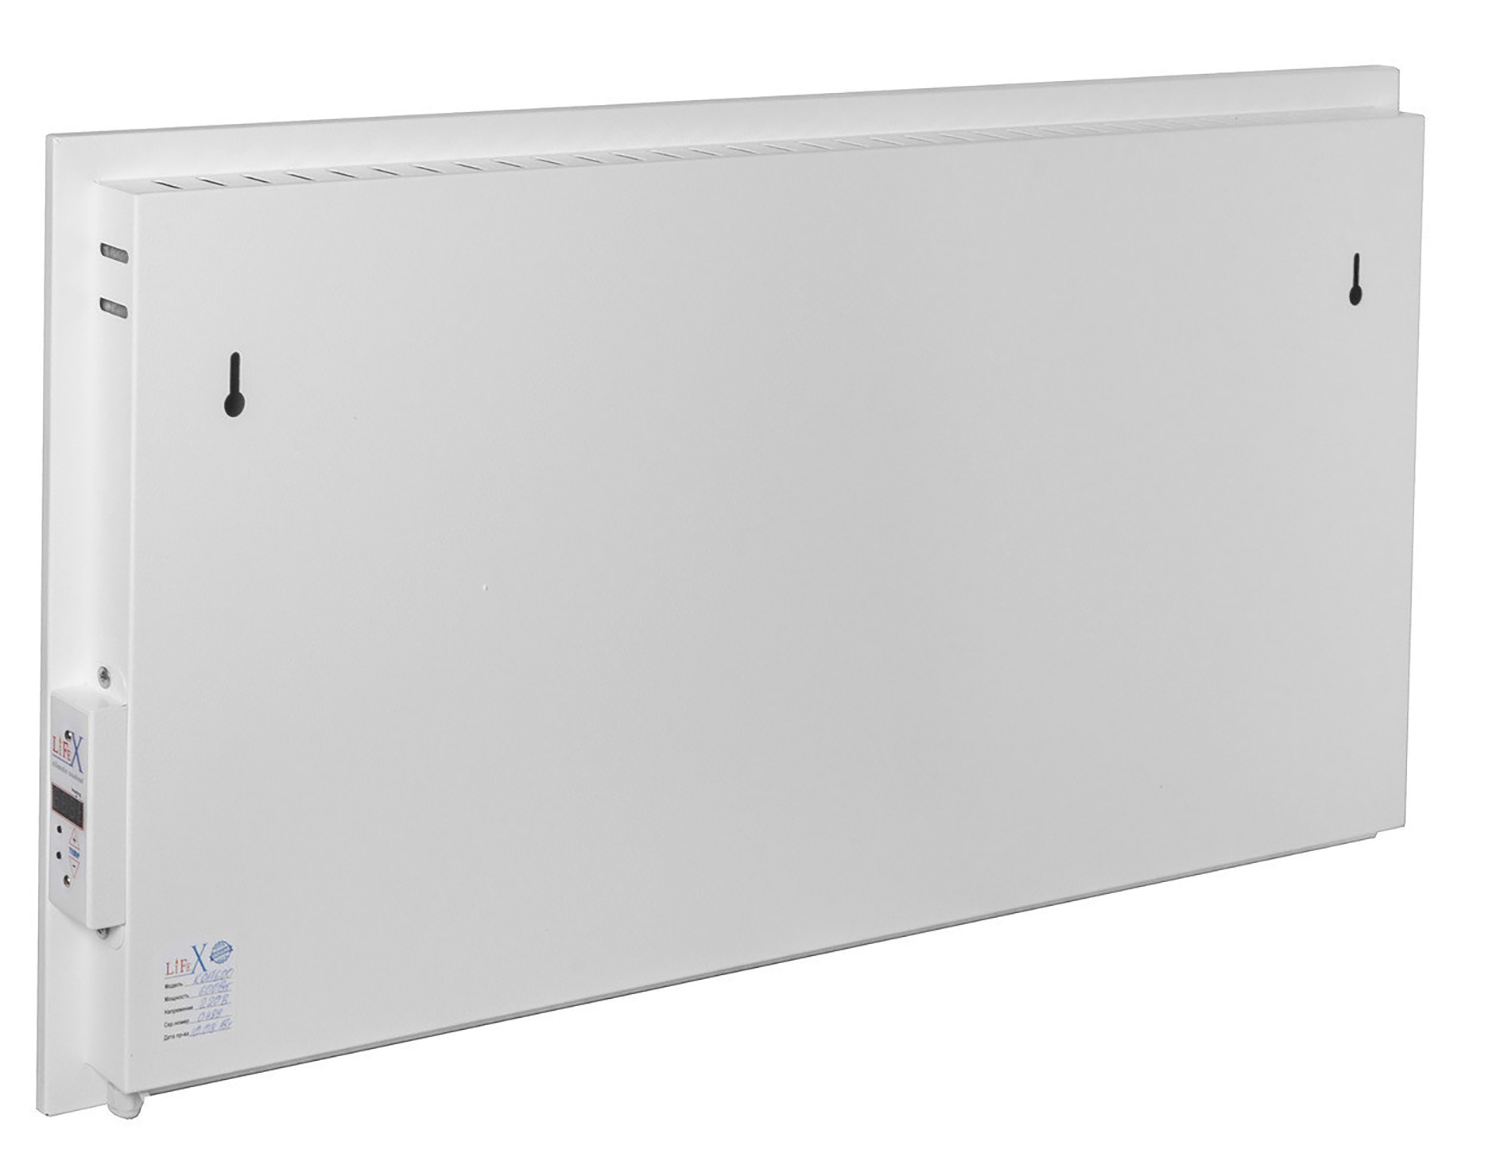 в продаже Панельный обогреватель Lifex BioAir 800 белый мрамор (TKP800WM) - фото 3